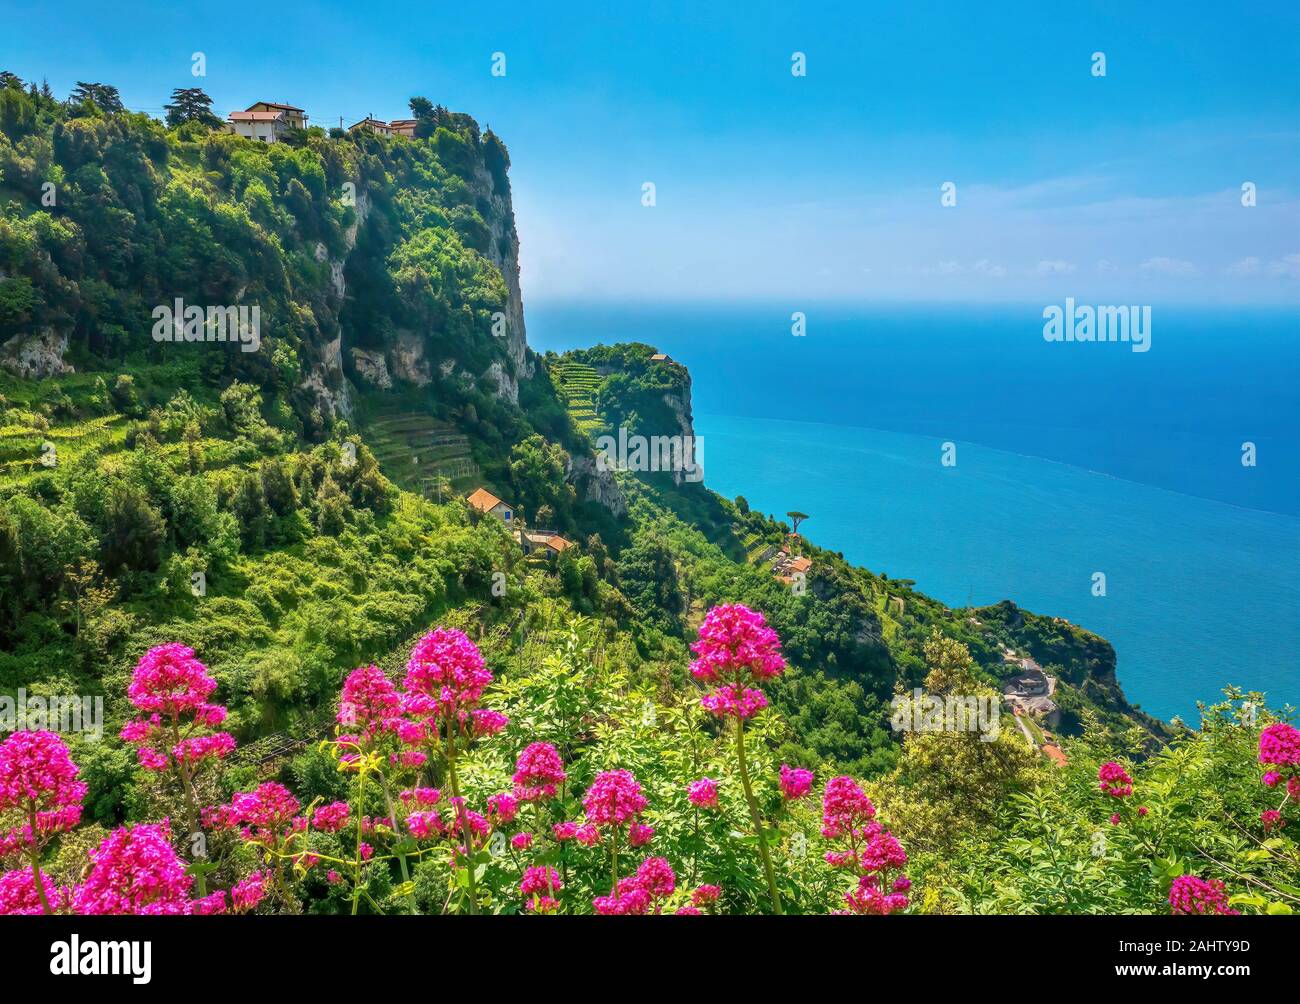 Spektakuläre mediterrane Landschaft entlang der Amalfiküste in Italien, mit steilen Hügeln und Felsen mit üppigem Grün und terrassierten Weinbergen bedeckt. Stockfoto